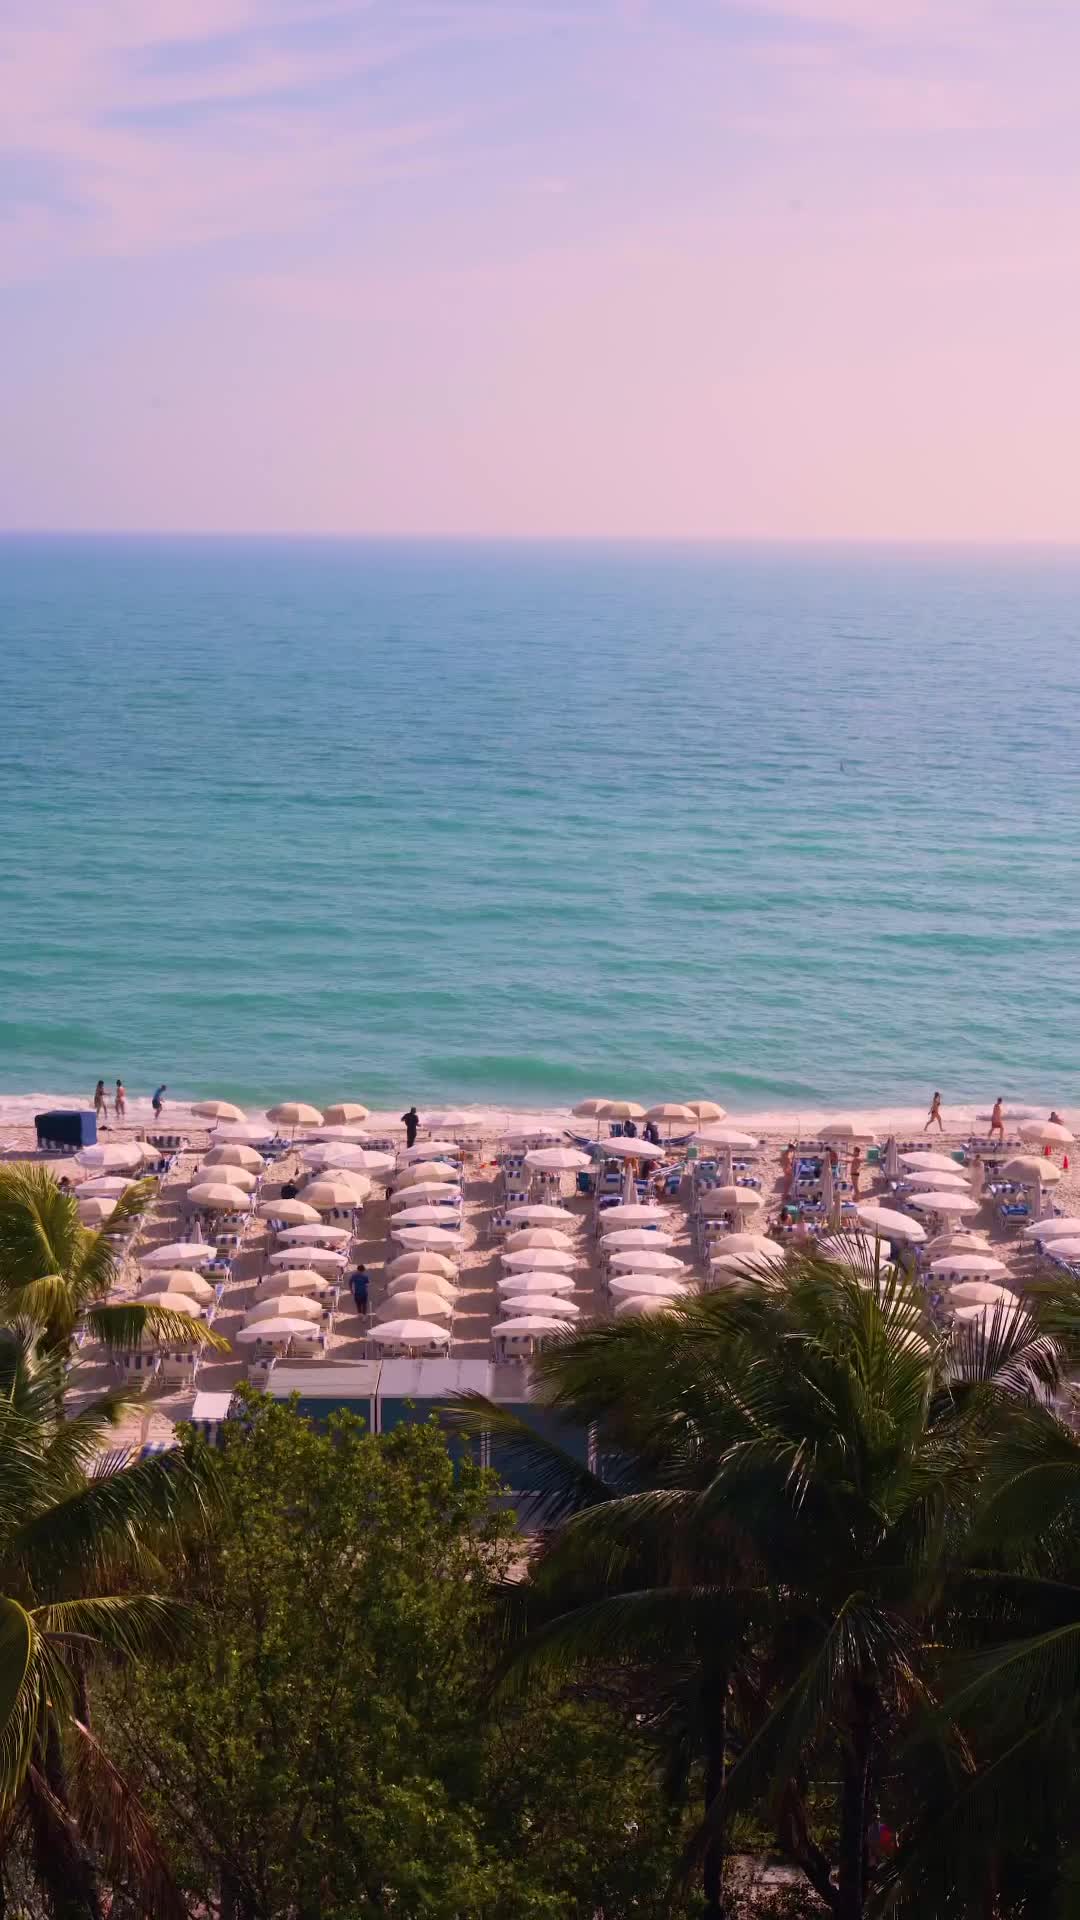 Stunning Miami Beach Scenes: Ocean, Sand & Sky